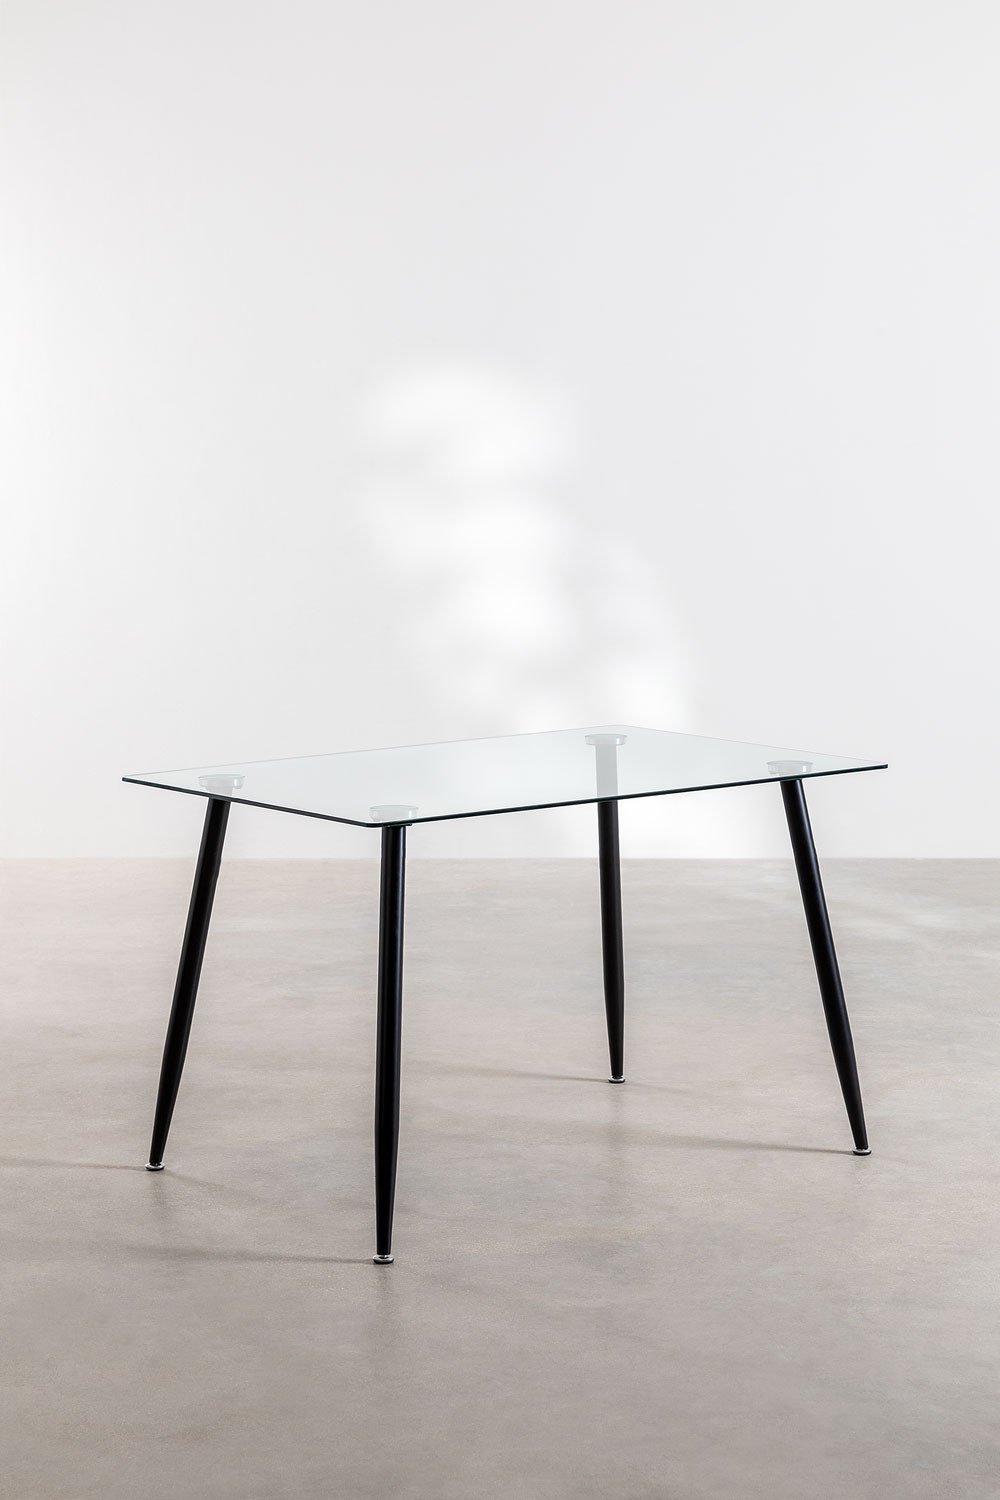 Table à Manger Rectangulaire en Acier et Verre (120x80 cm) Lahs Style, image de la galerie 1